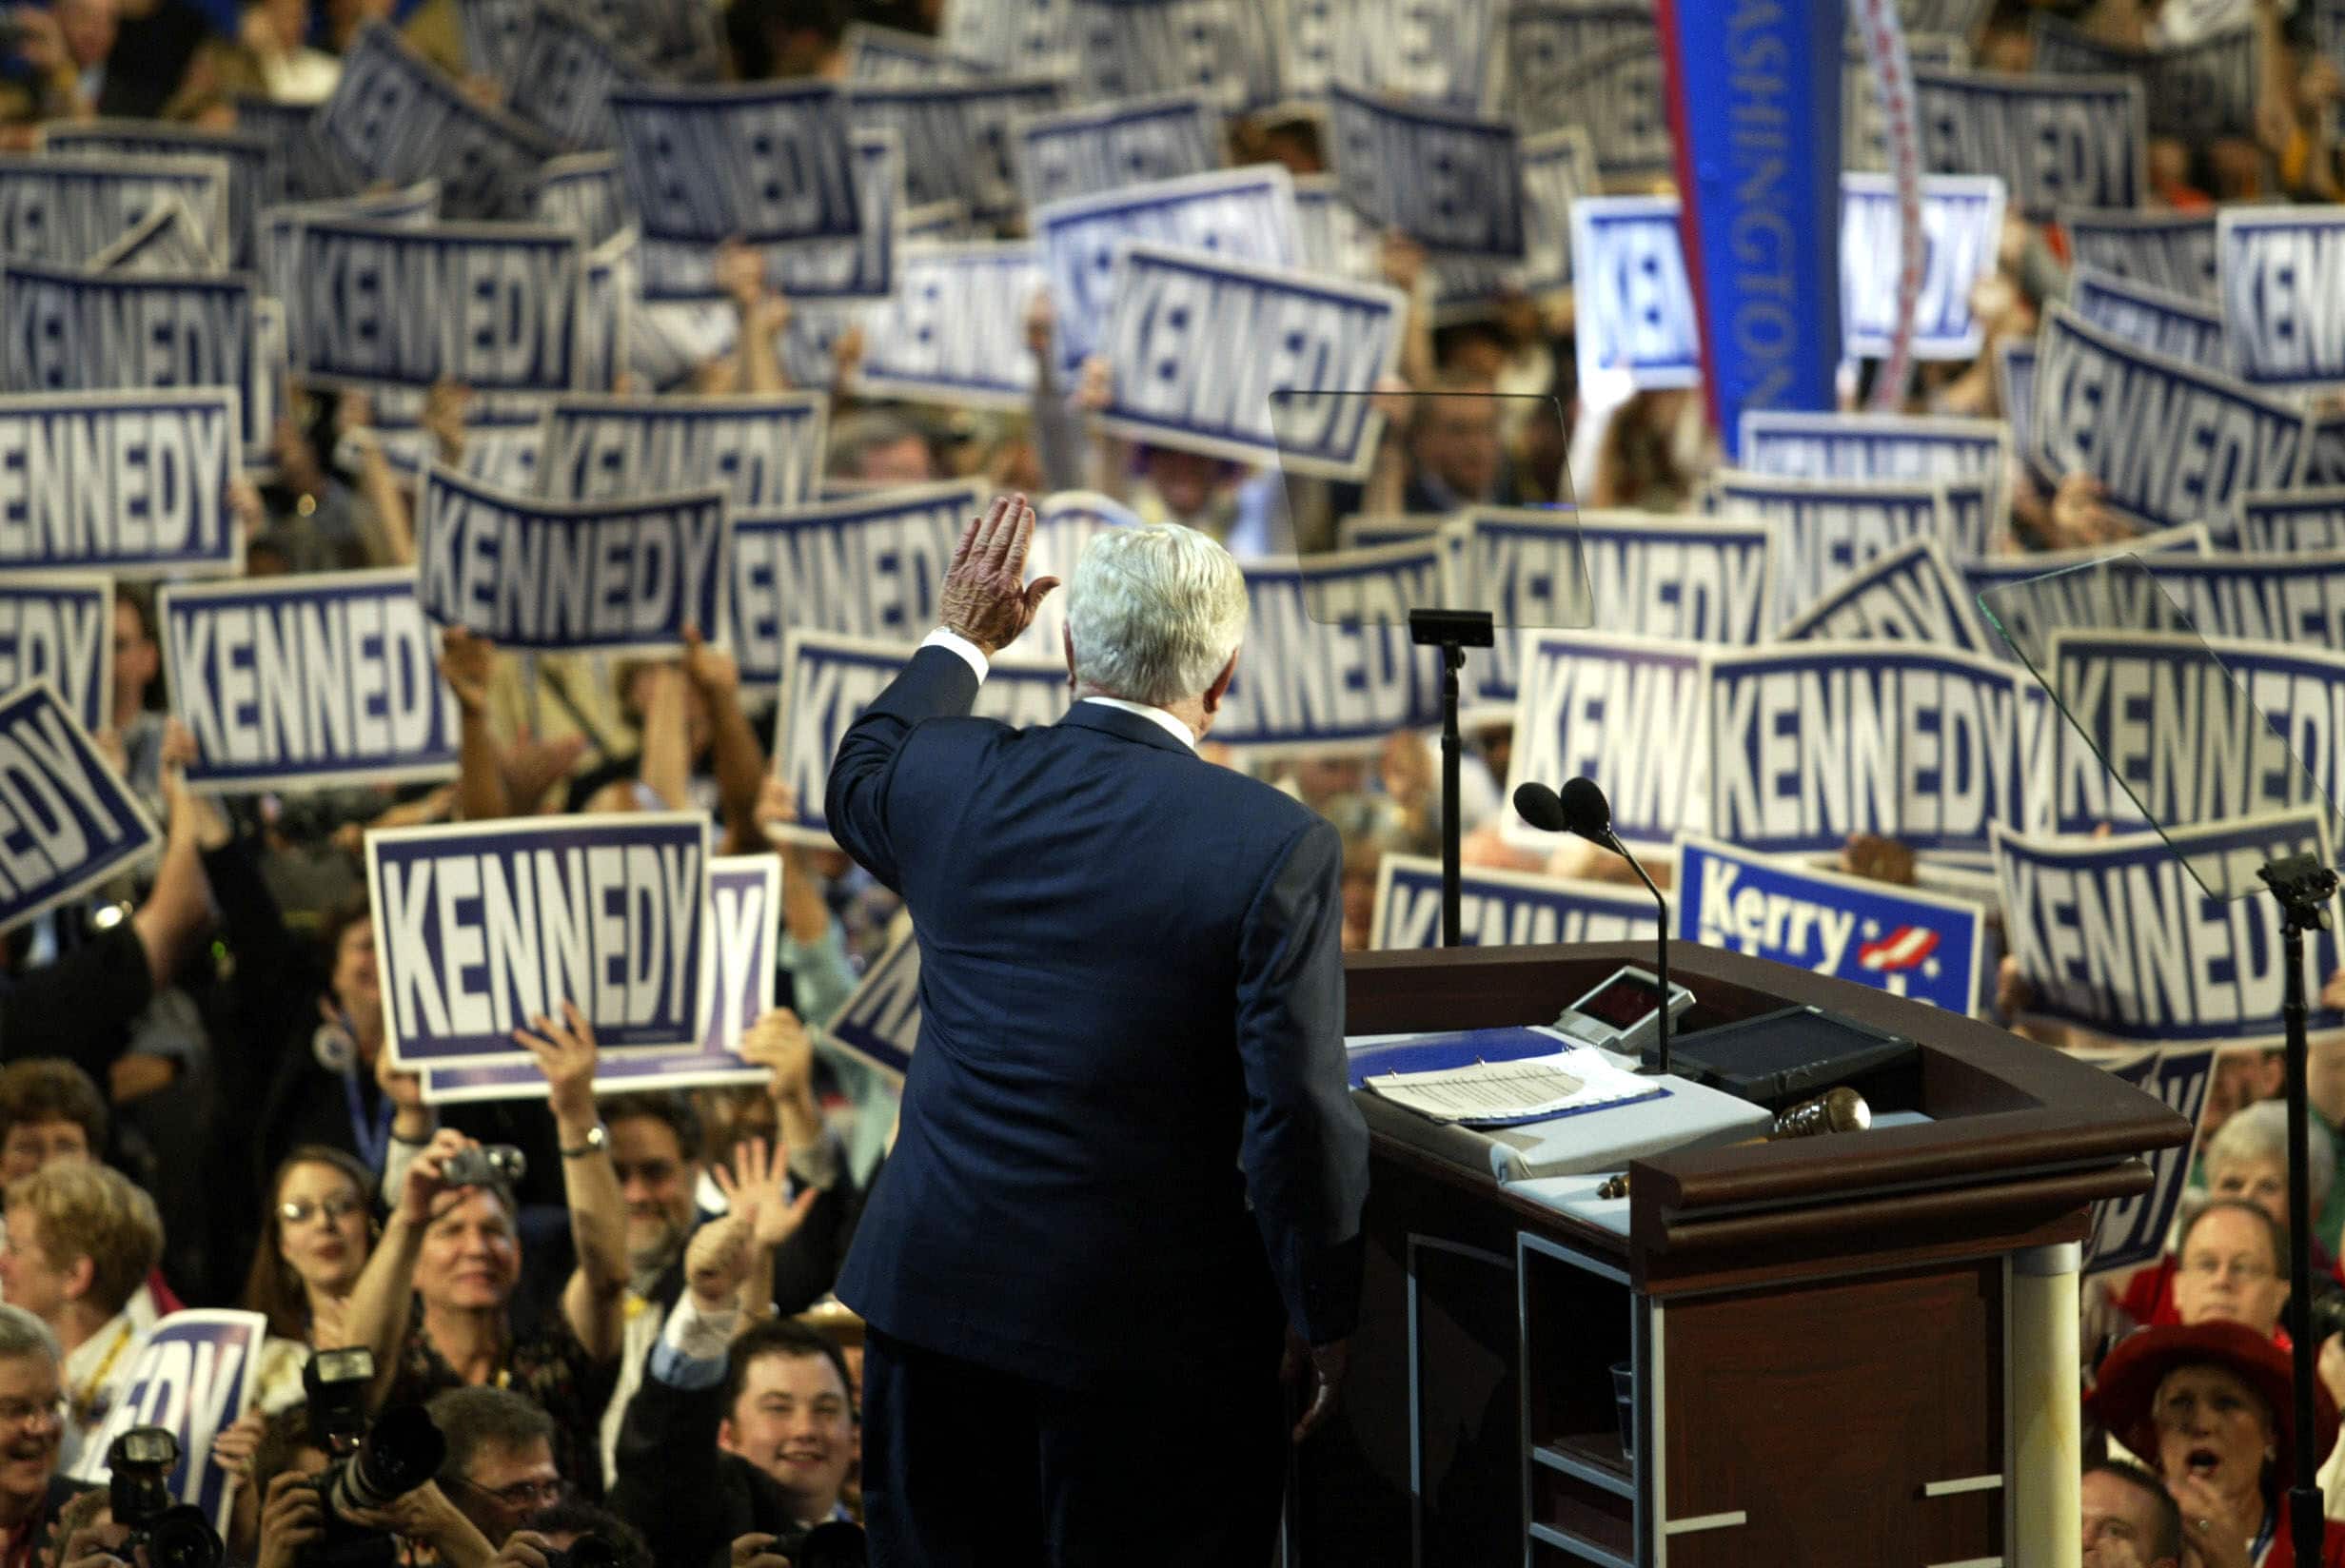 טד קנדי נואם בוועדה הדמוקרטית הלאומית בבוסטון, 27 ביולי 2004 (צילום: TIMOTHY A. CLARY / AFP)